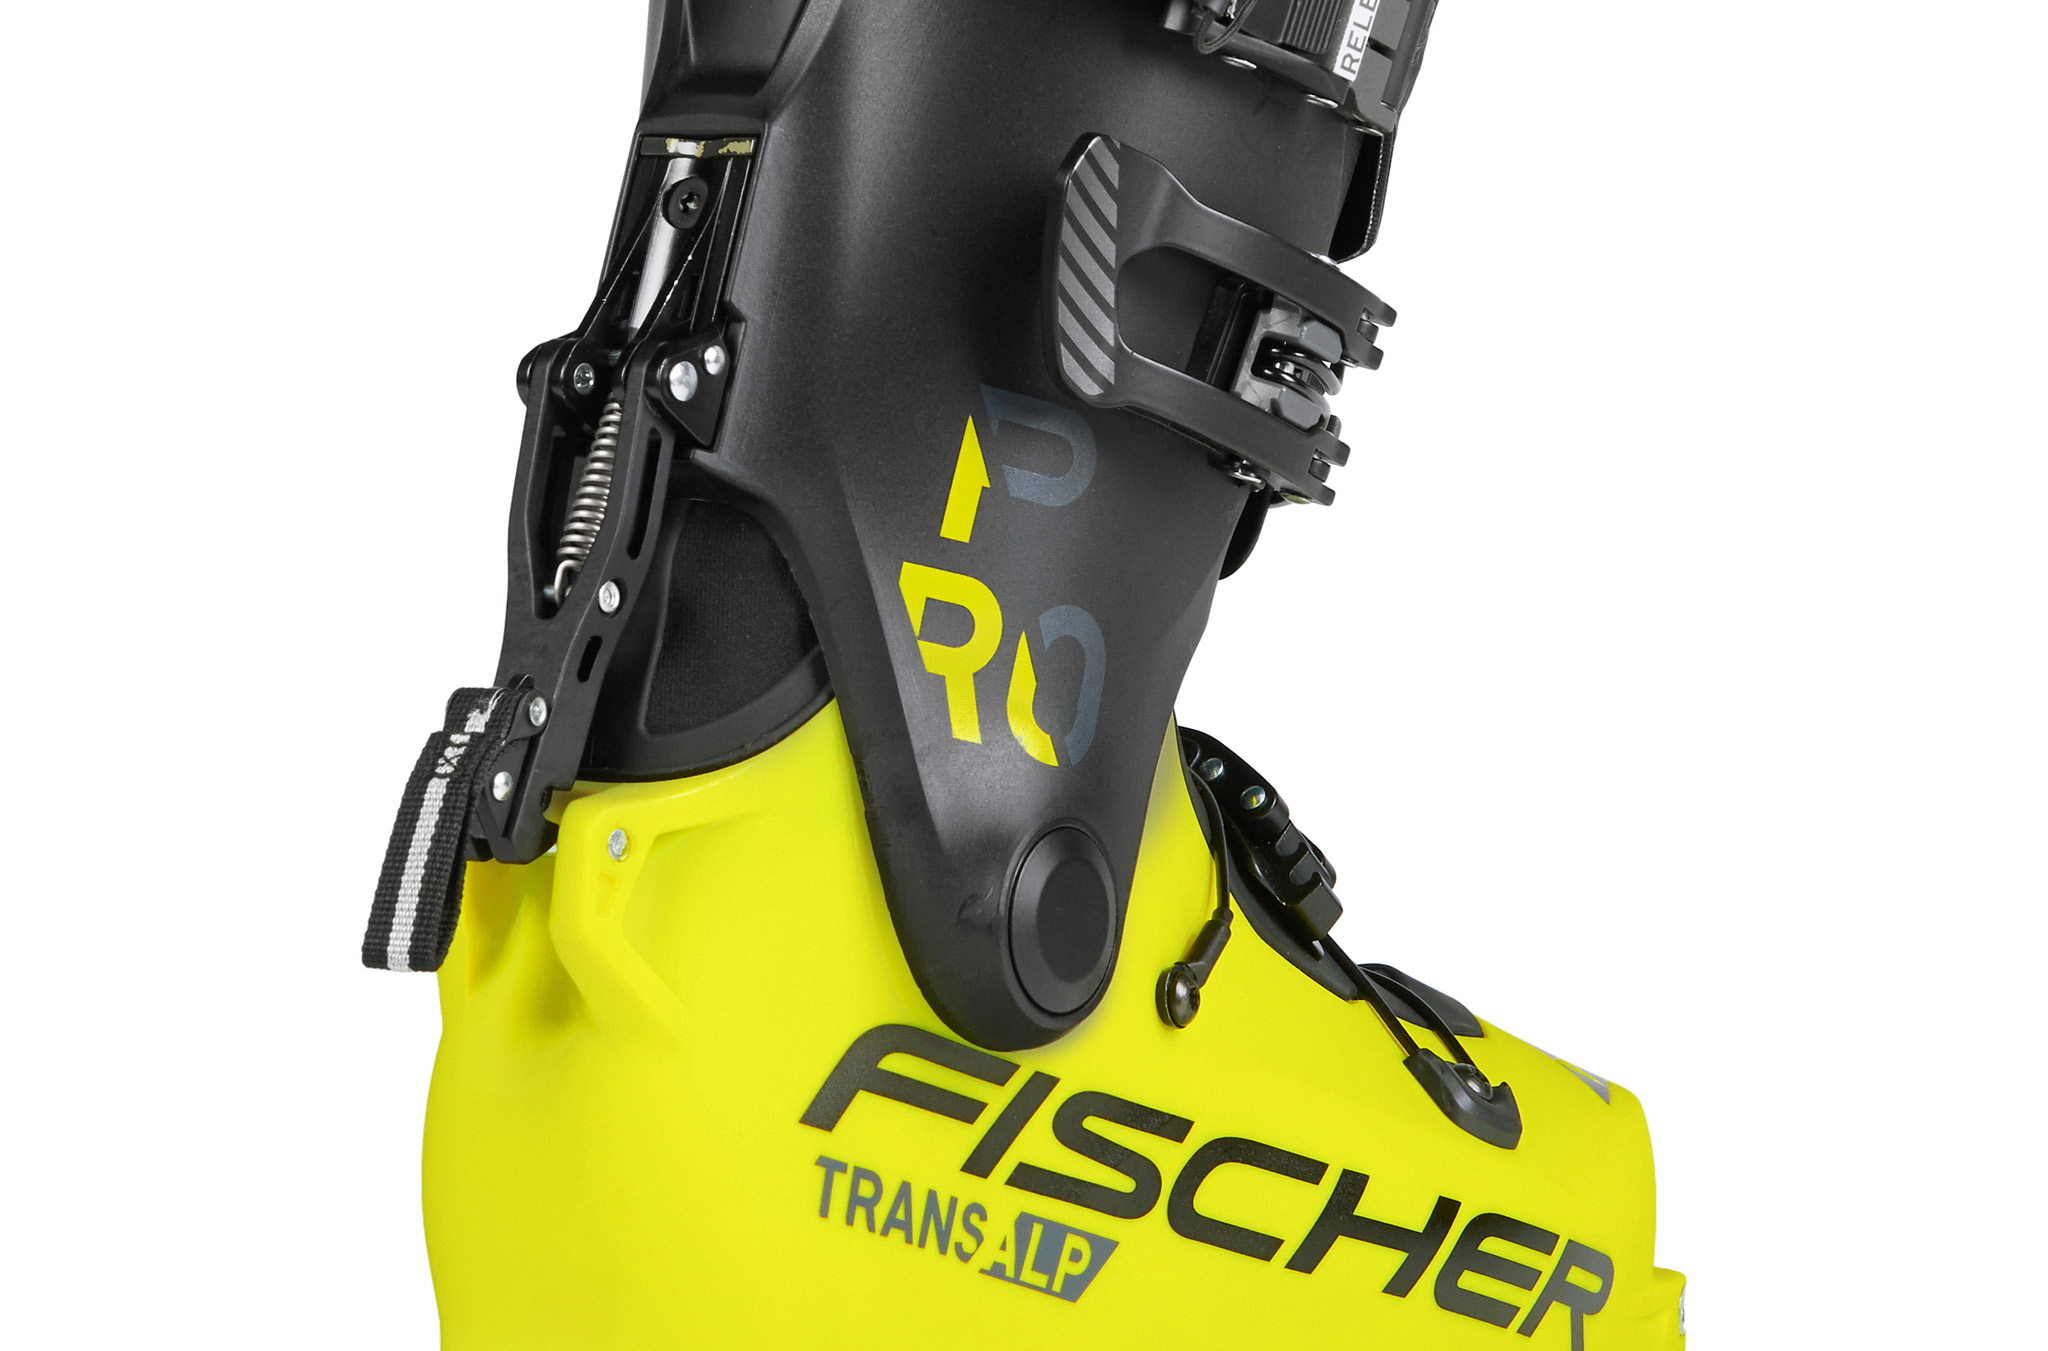 Luke Koppa reviews the Fischer Transalp Pro for Blister